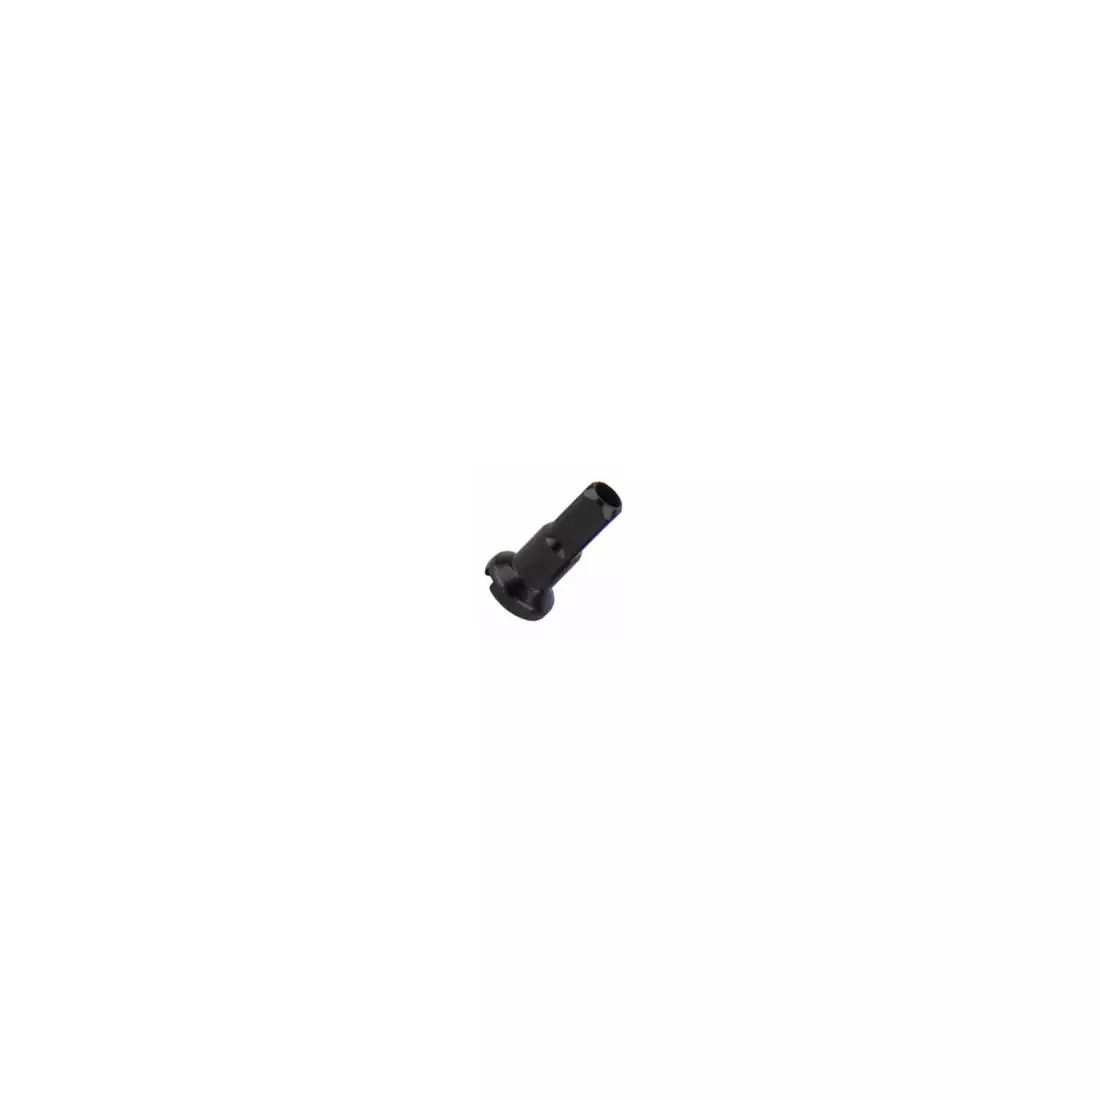 CNSPOKE AN14 Alunippel 14 mm, schwarz, 144 stück